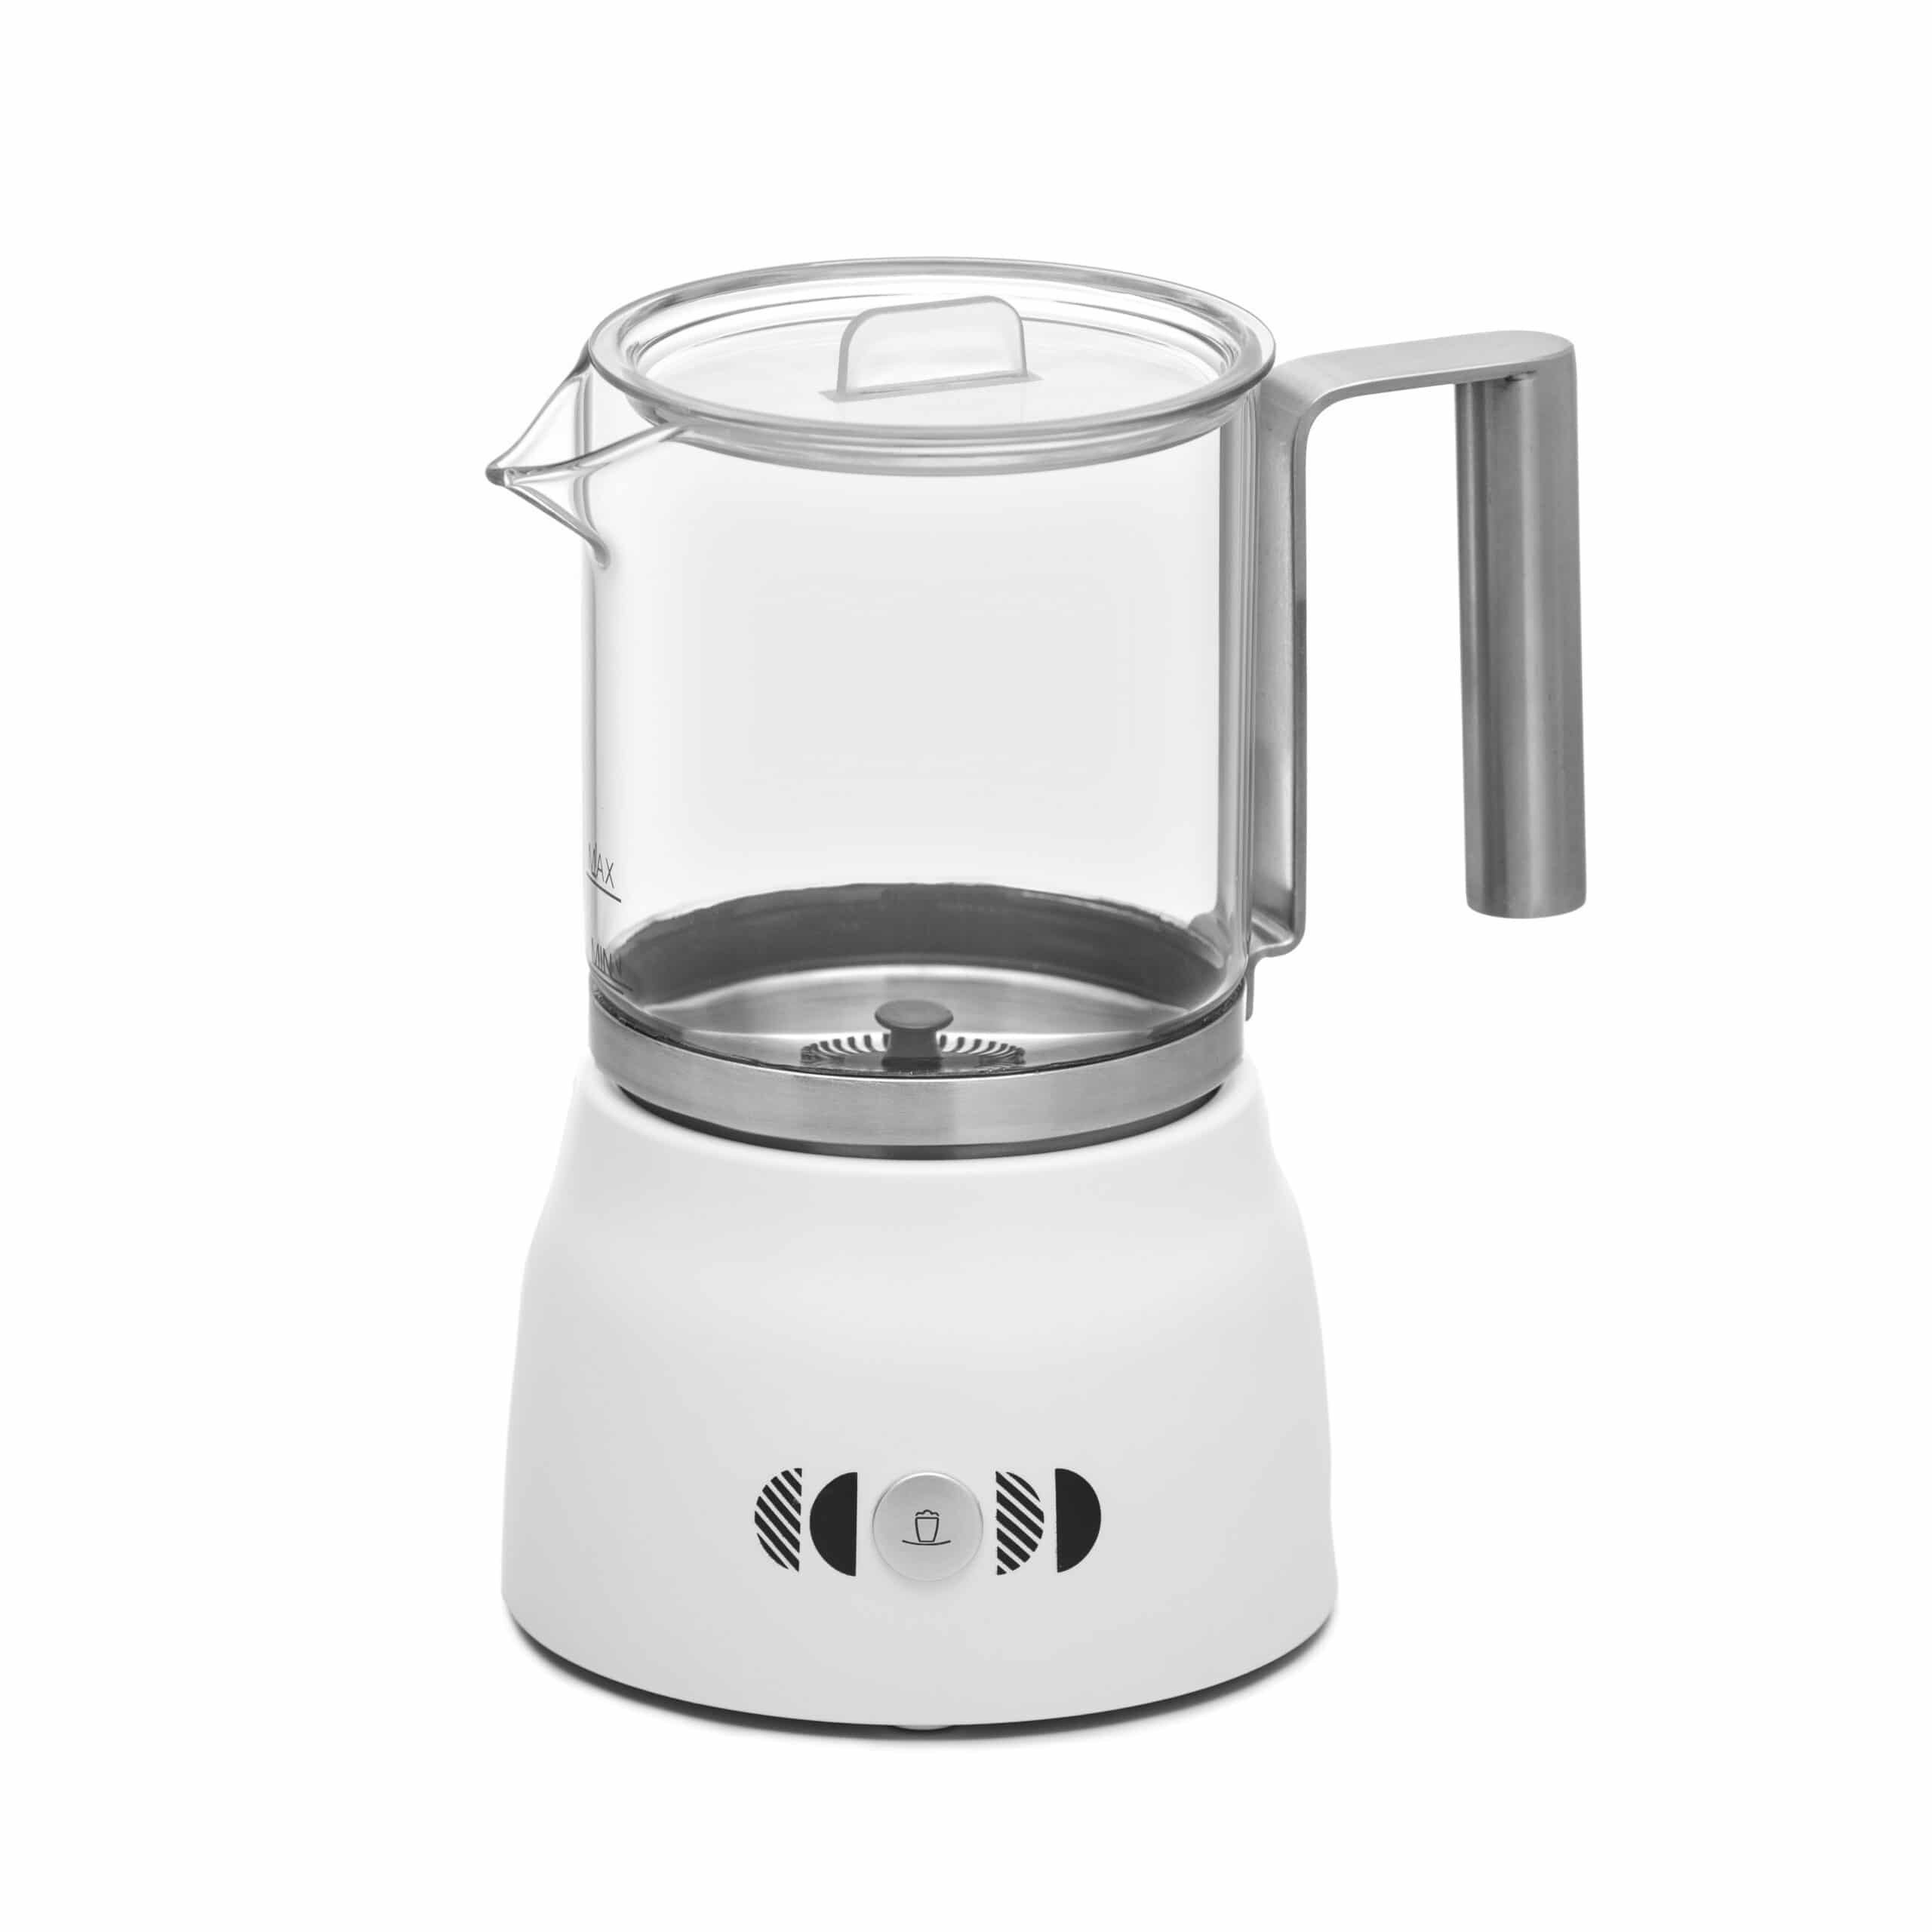 control de la temperatura Espumadora eléctrica calentador de líquidos para café cappuccino Classico latte Aicok apagado automático 